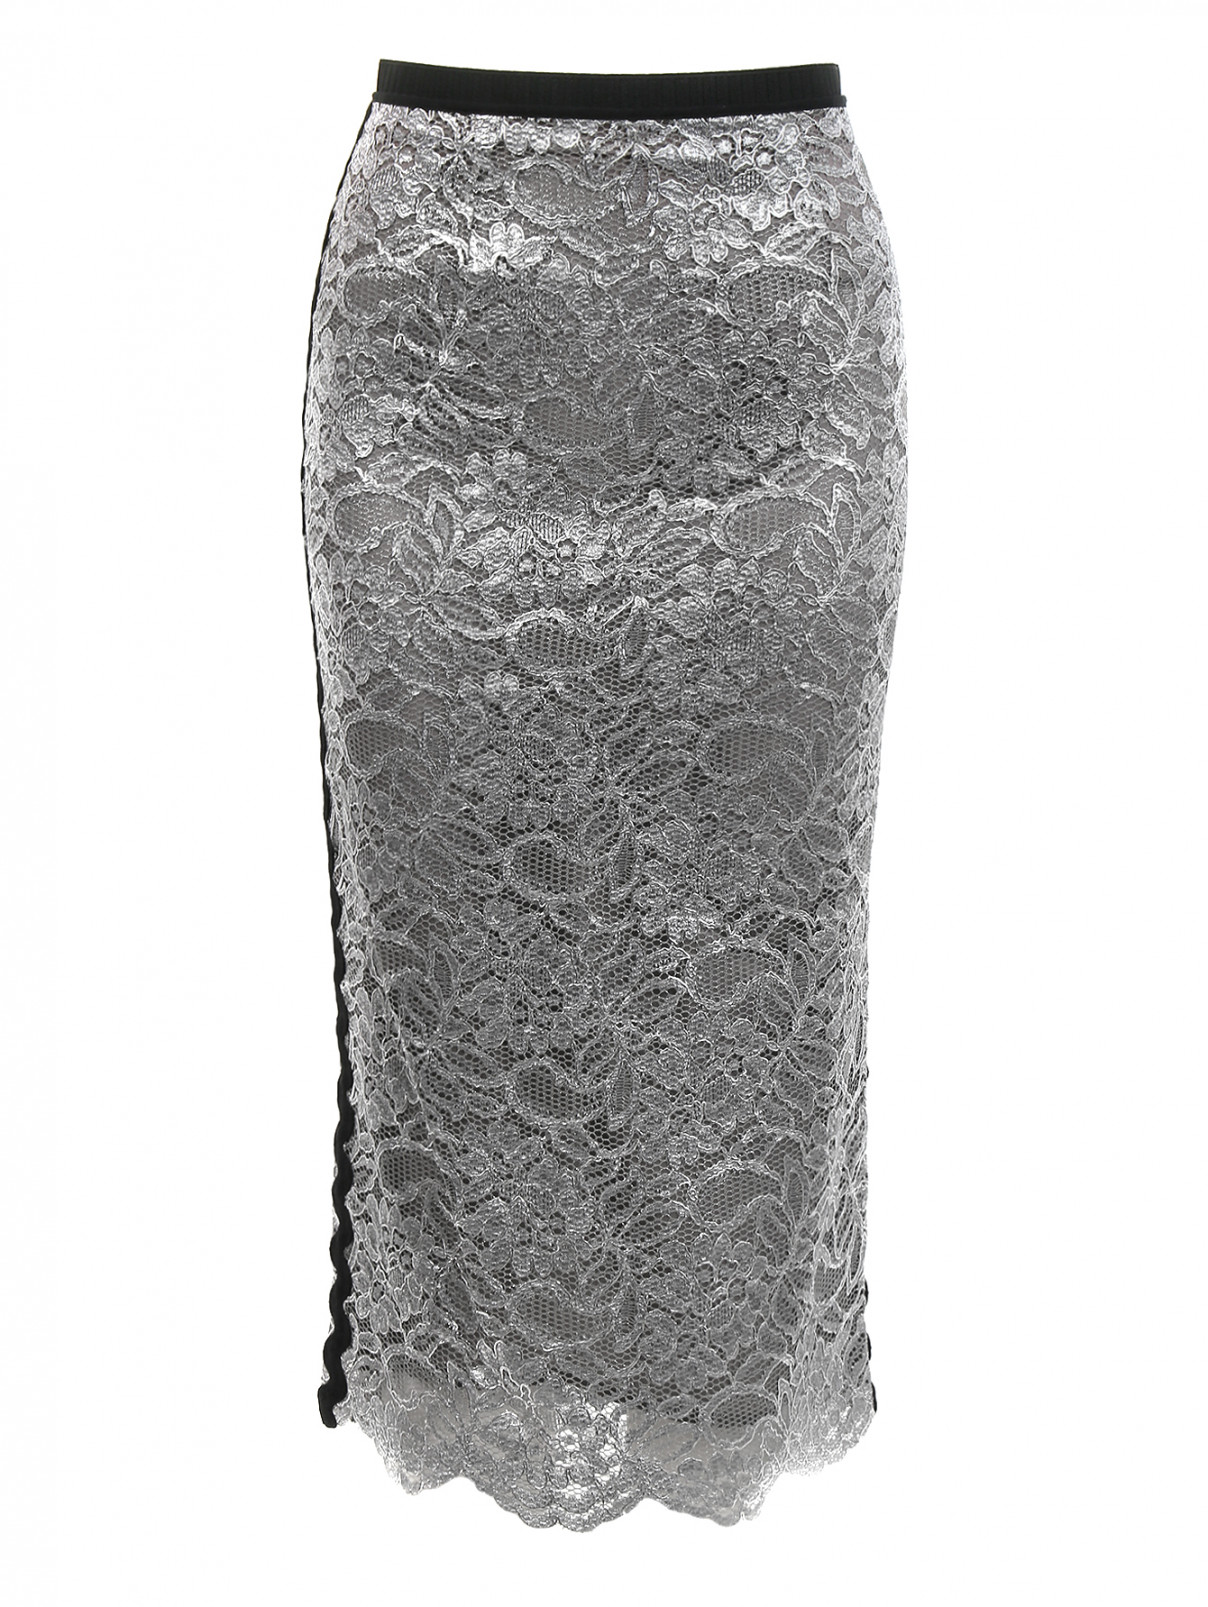 Юбка карандаш с контрастной отделкой по бокам Antonio Marras  –  Общий вид  – Цвет:  Серый